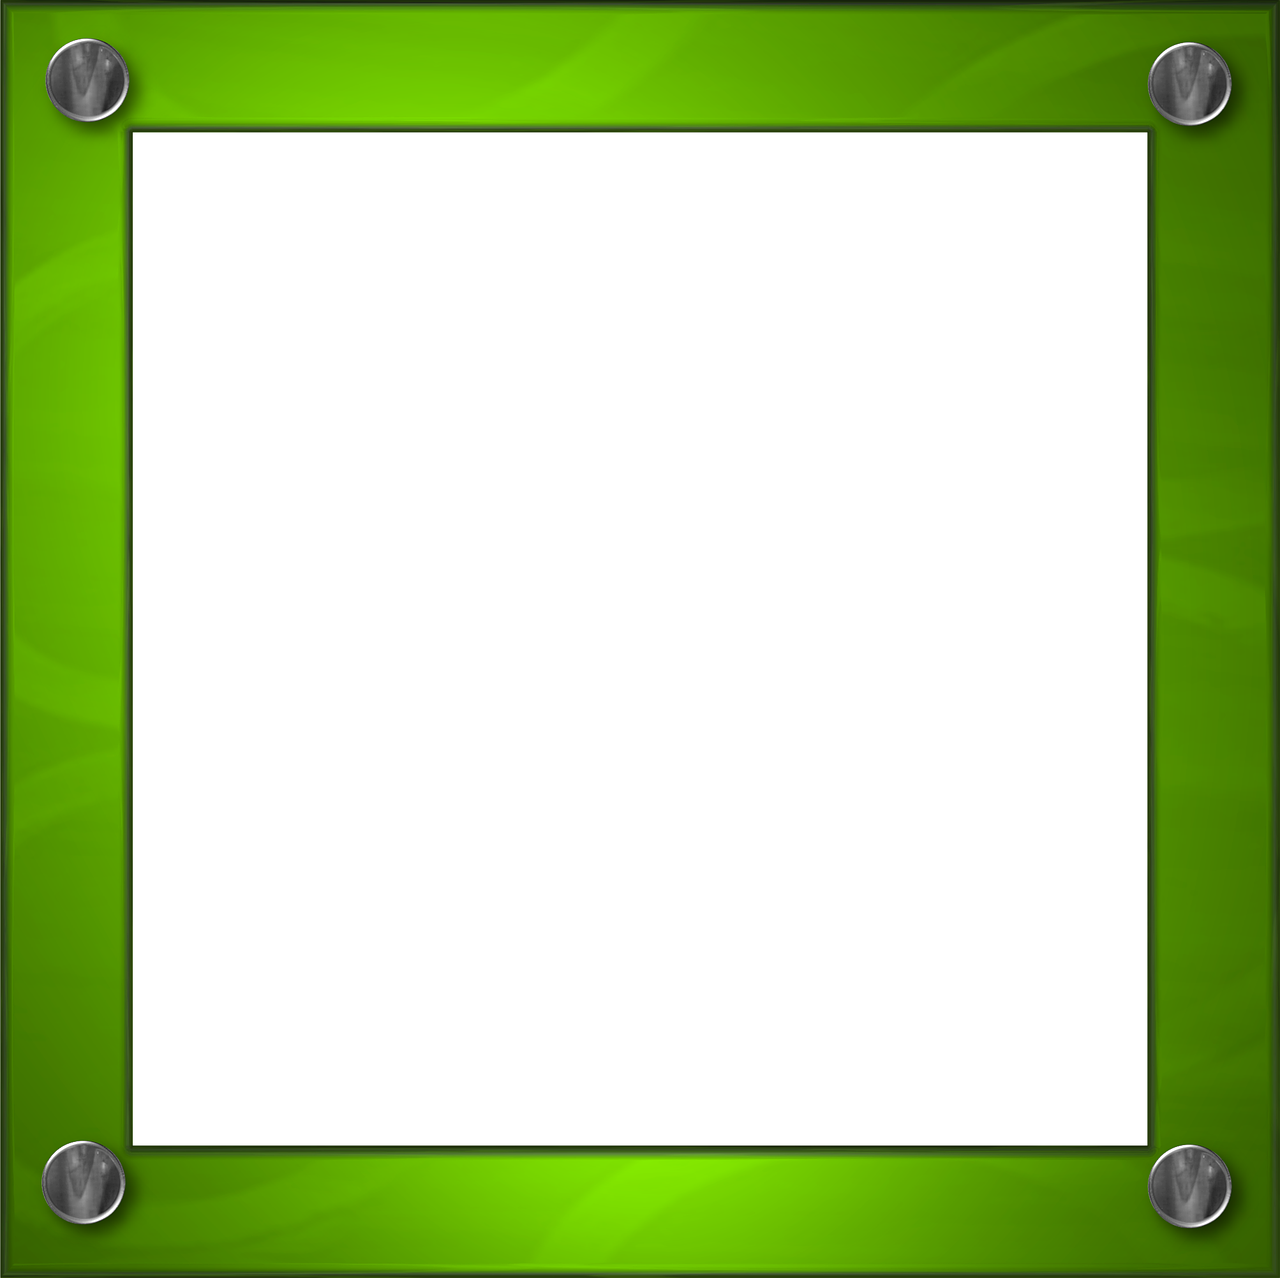 Green Frame Border Bevel Design Png Image - Border Design Green (1280x1278)